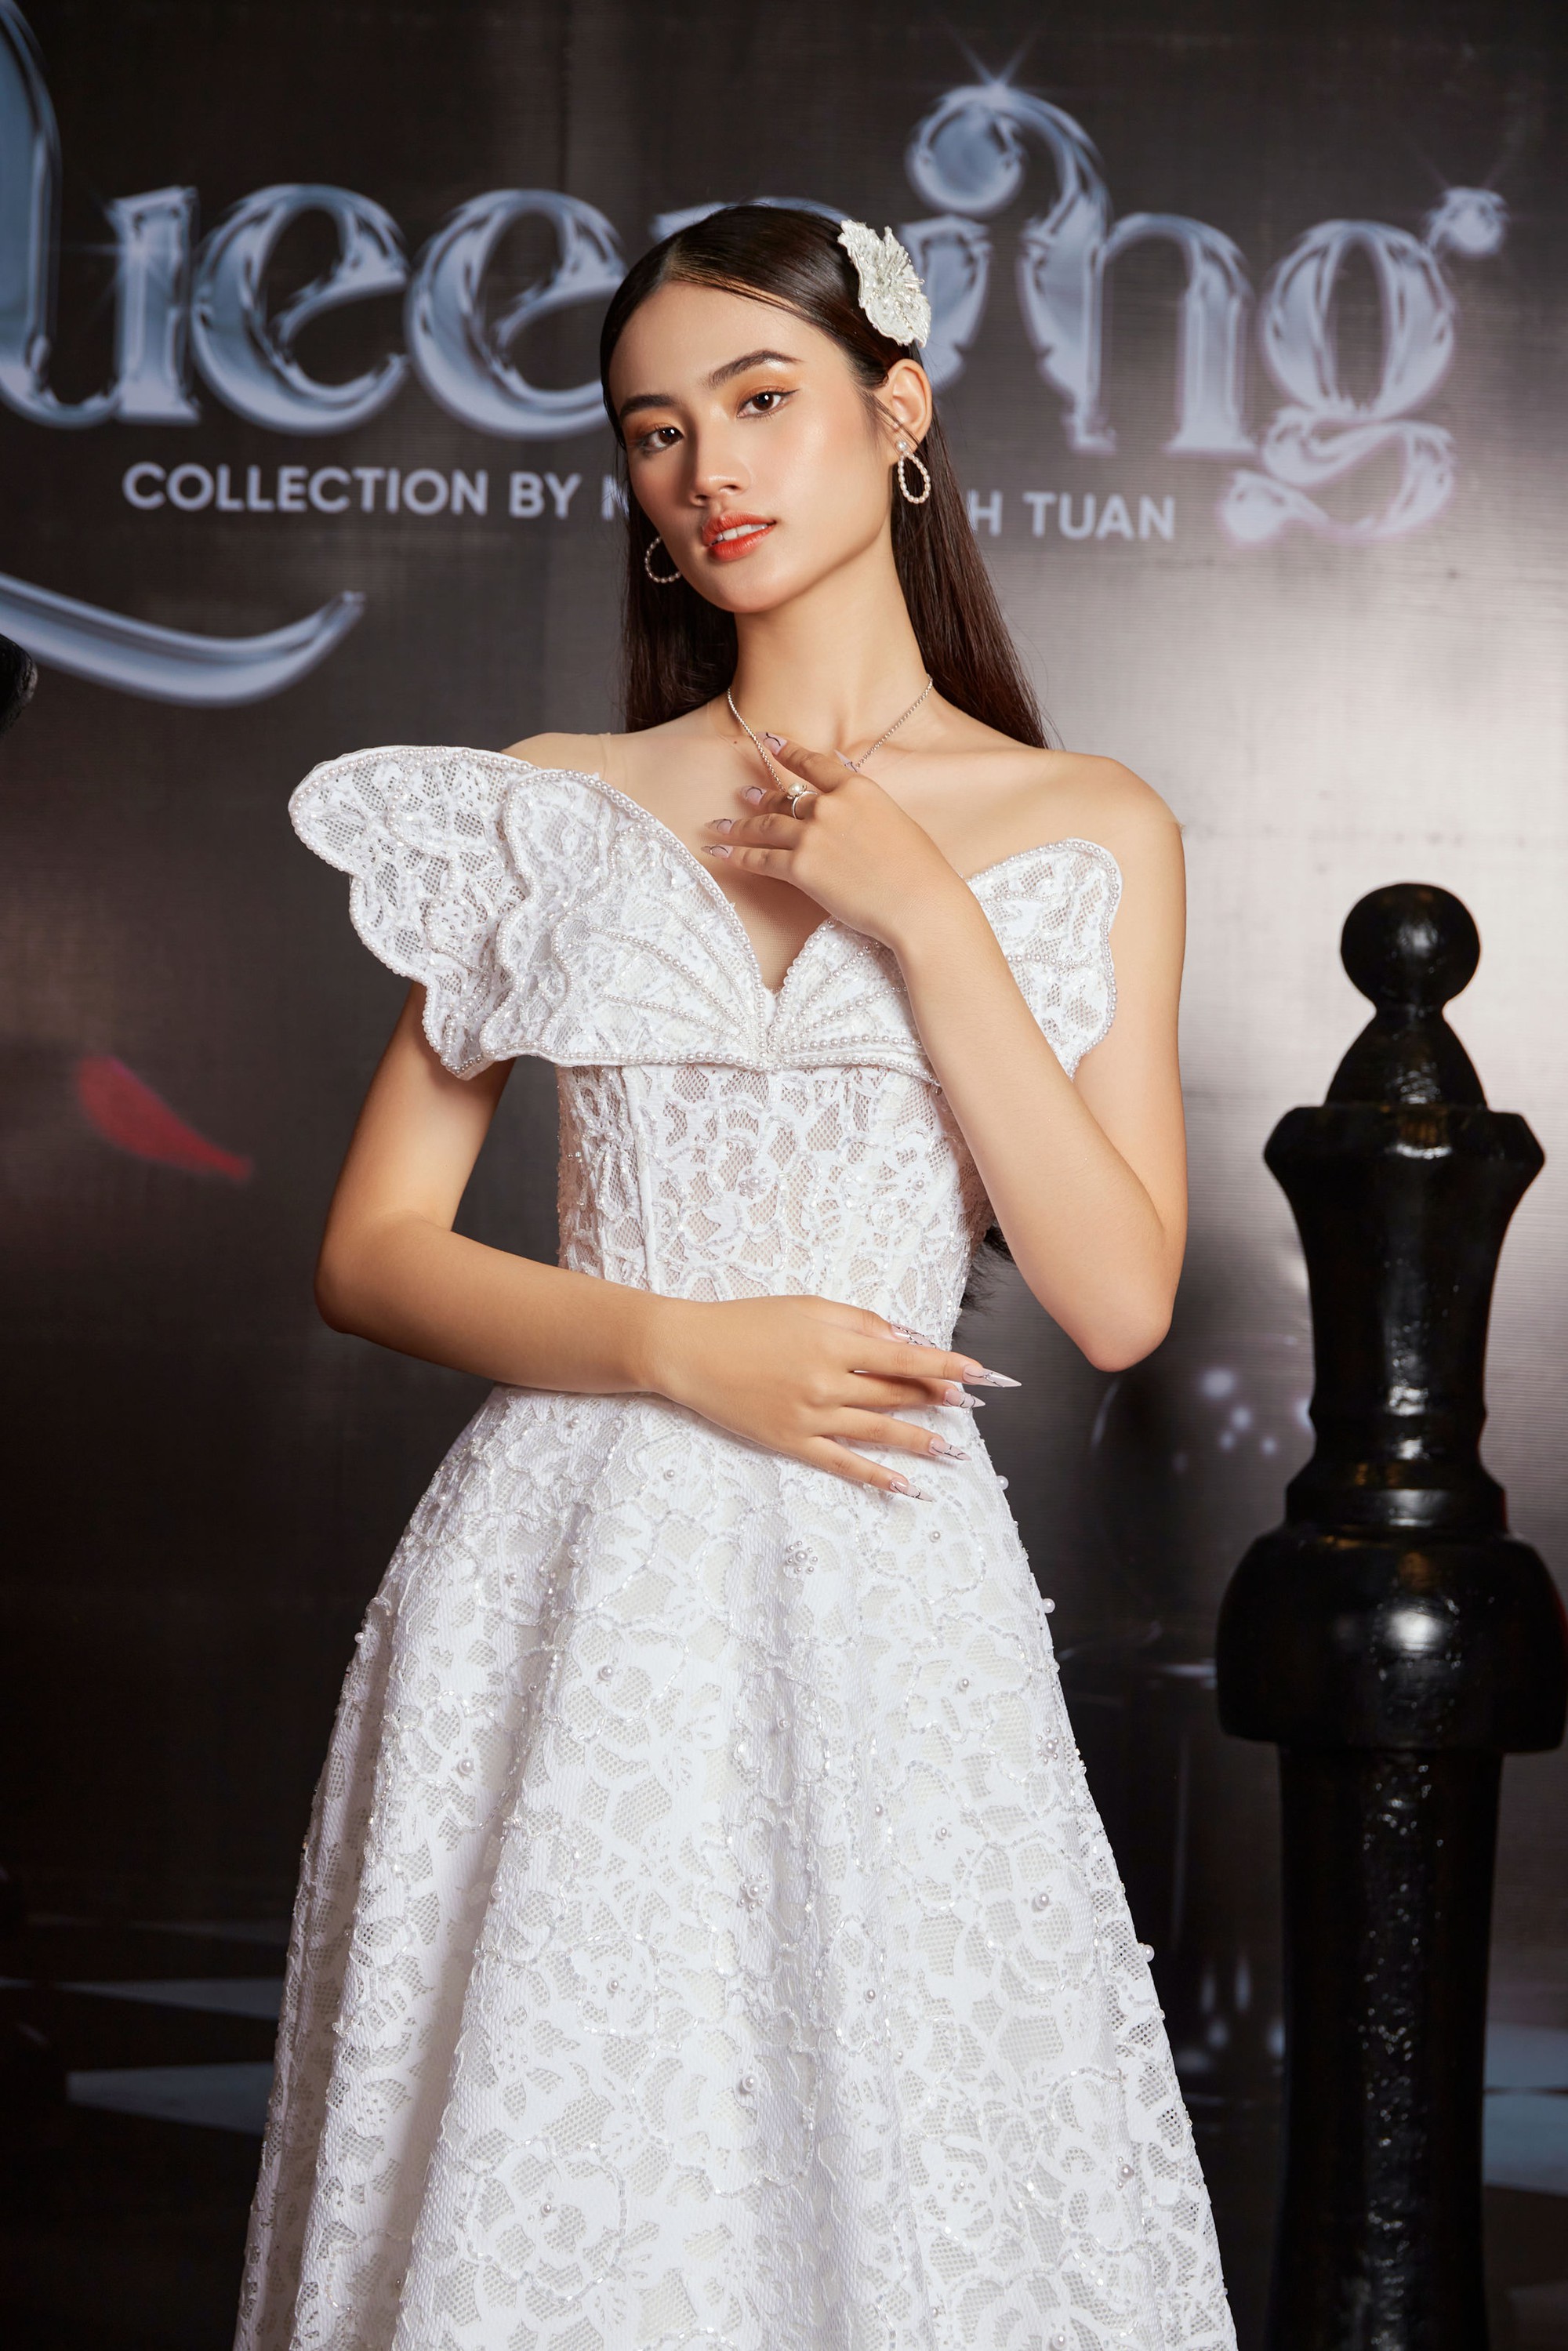 Hoa hậu Huỳnh Trần Ý Nhi gợi cảm khi diện váy của Nguyễn Minh Tuấn - Ảnh 1.